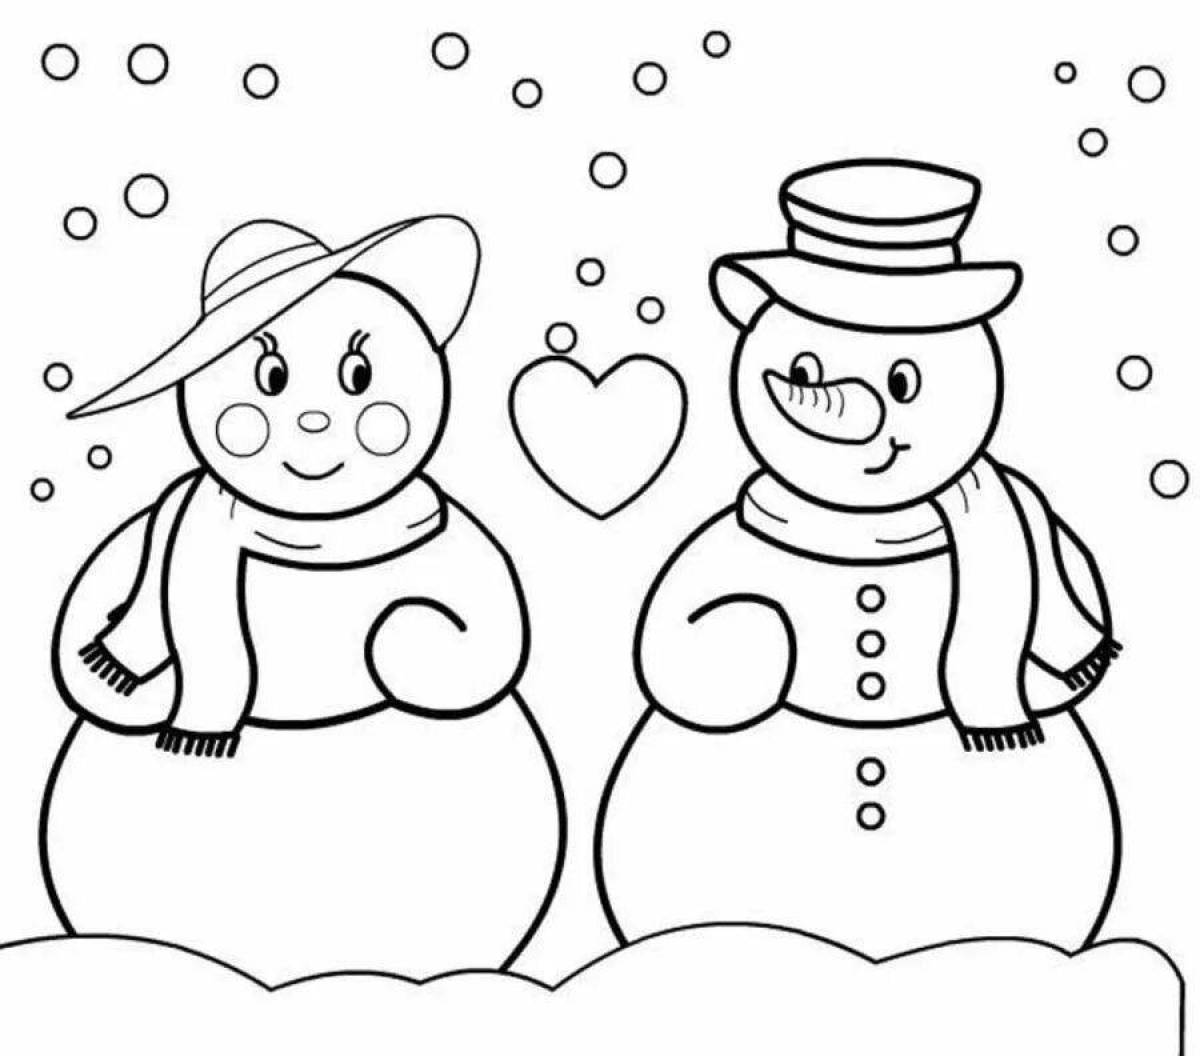 Снеговик-раскраска giggly для детей 6-7 лет